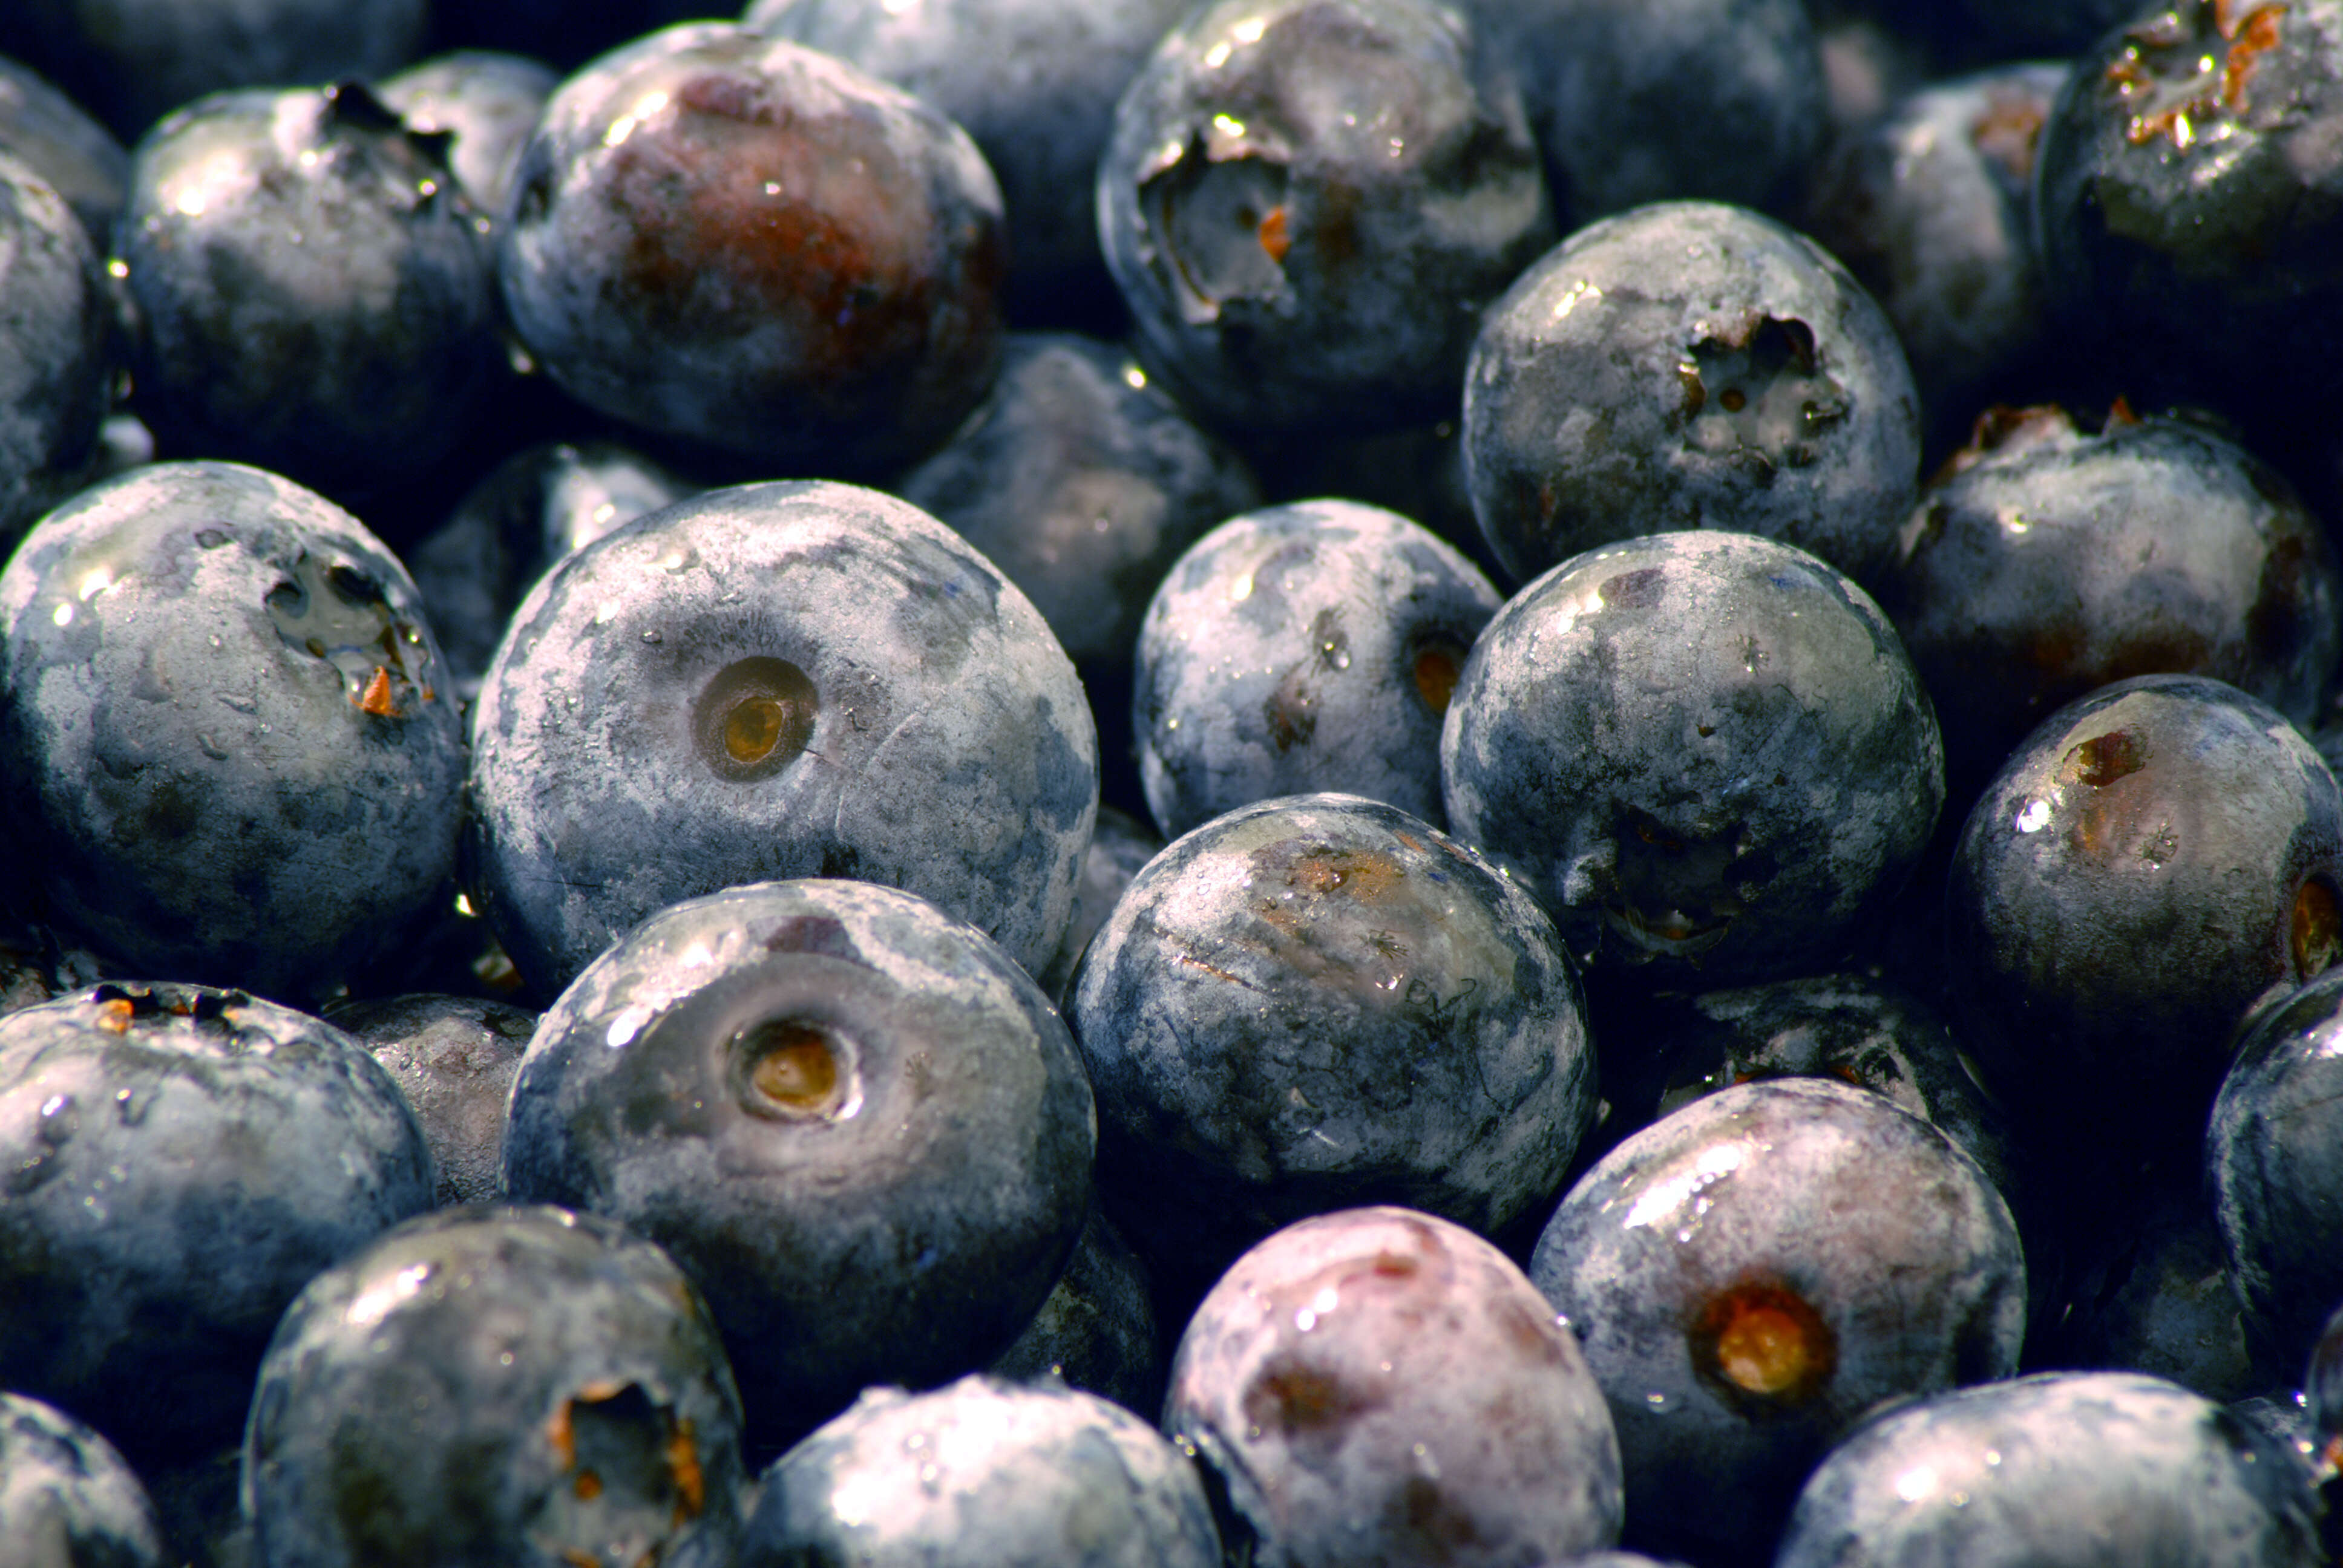 Image of Highbush blueberry